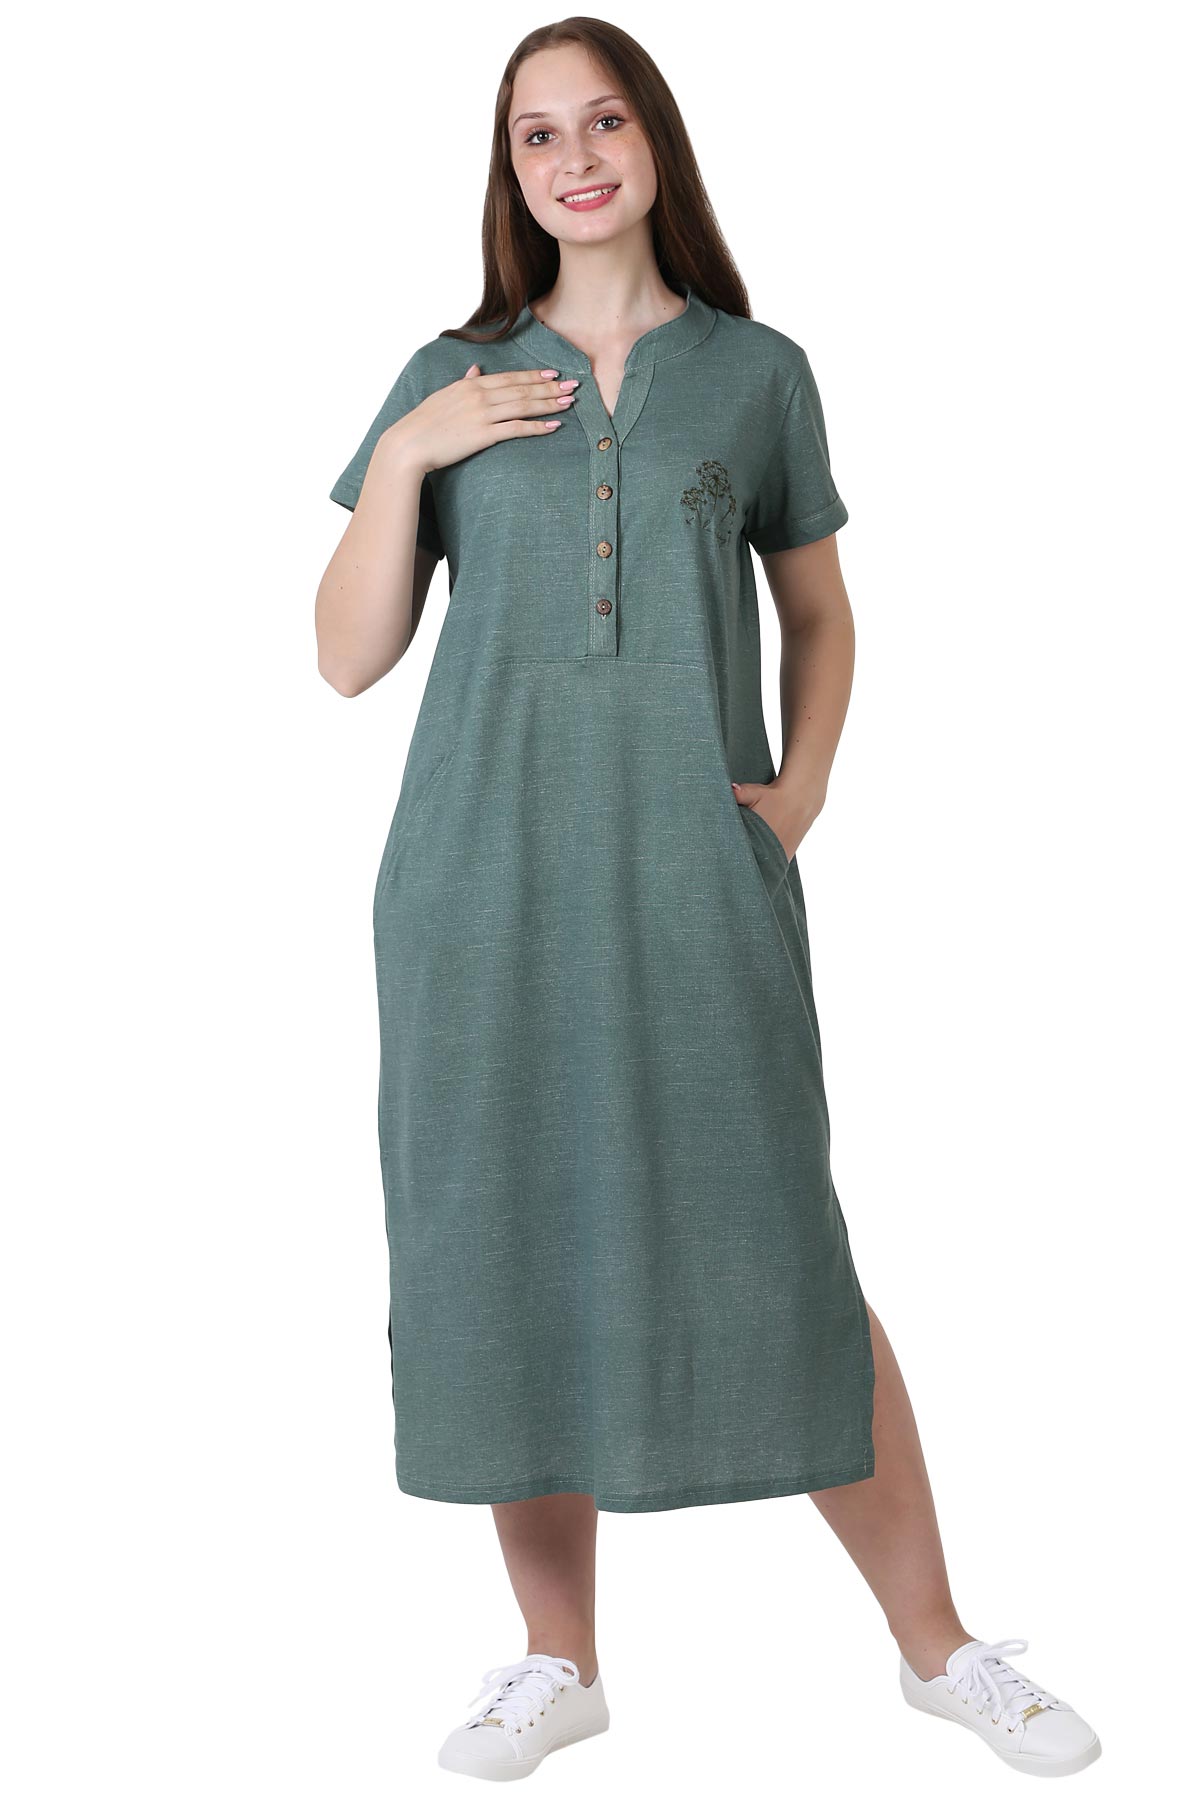 

Платье женское Оптима Трикотаж 22-0092 зеленое 48 RU, Зеленый, 22-0092